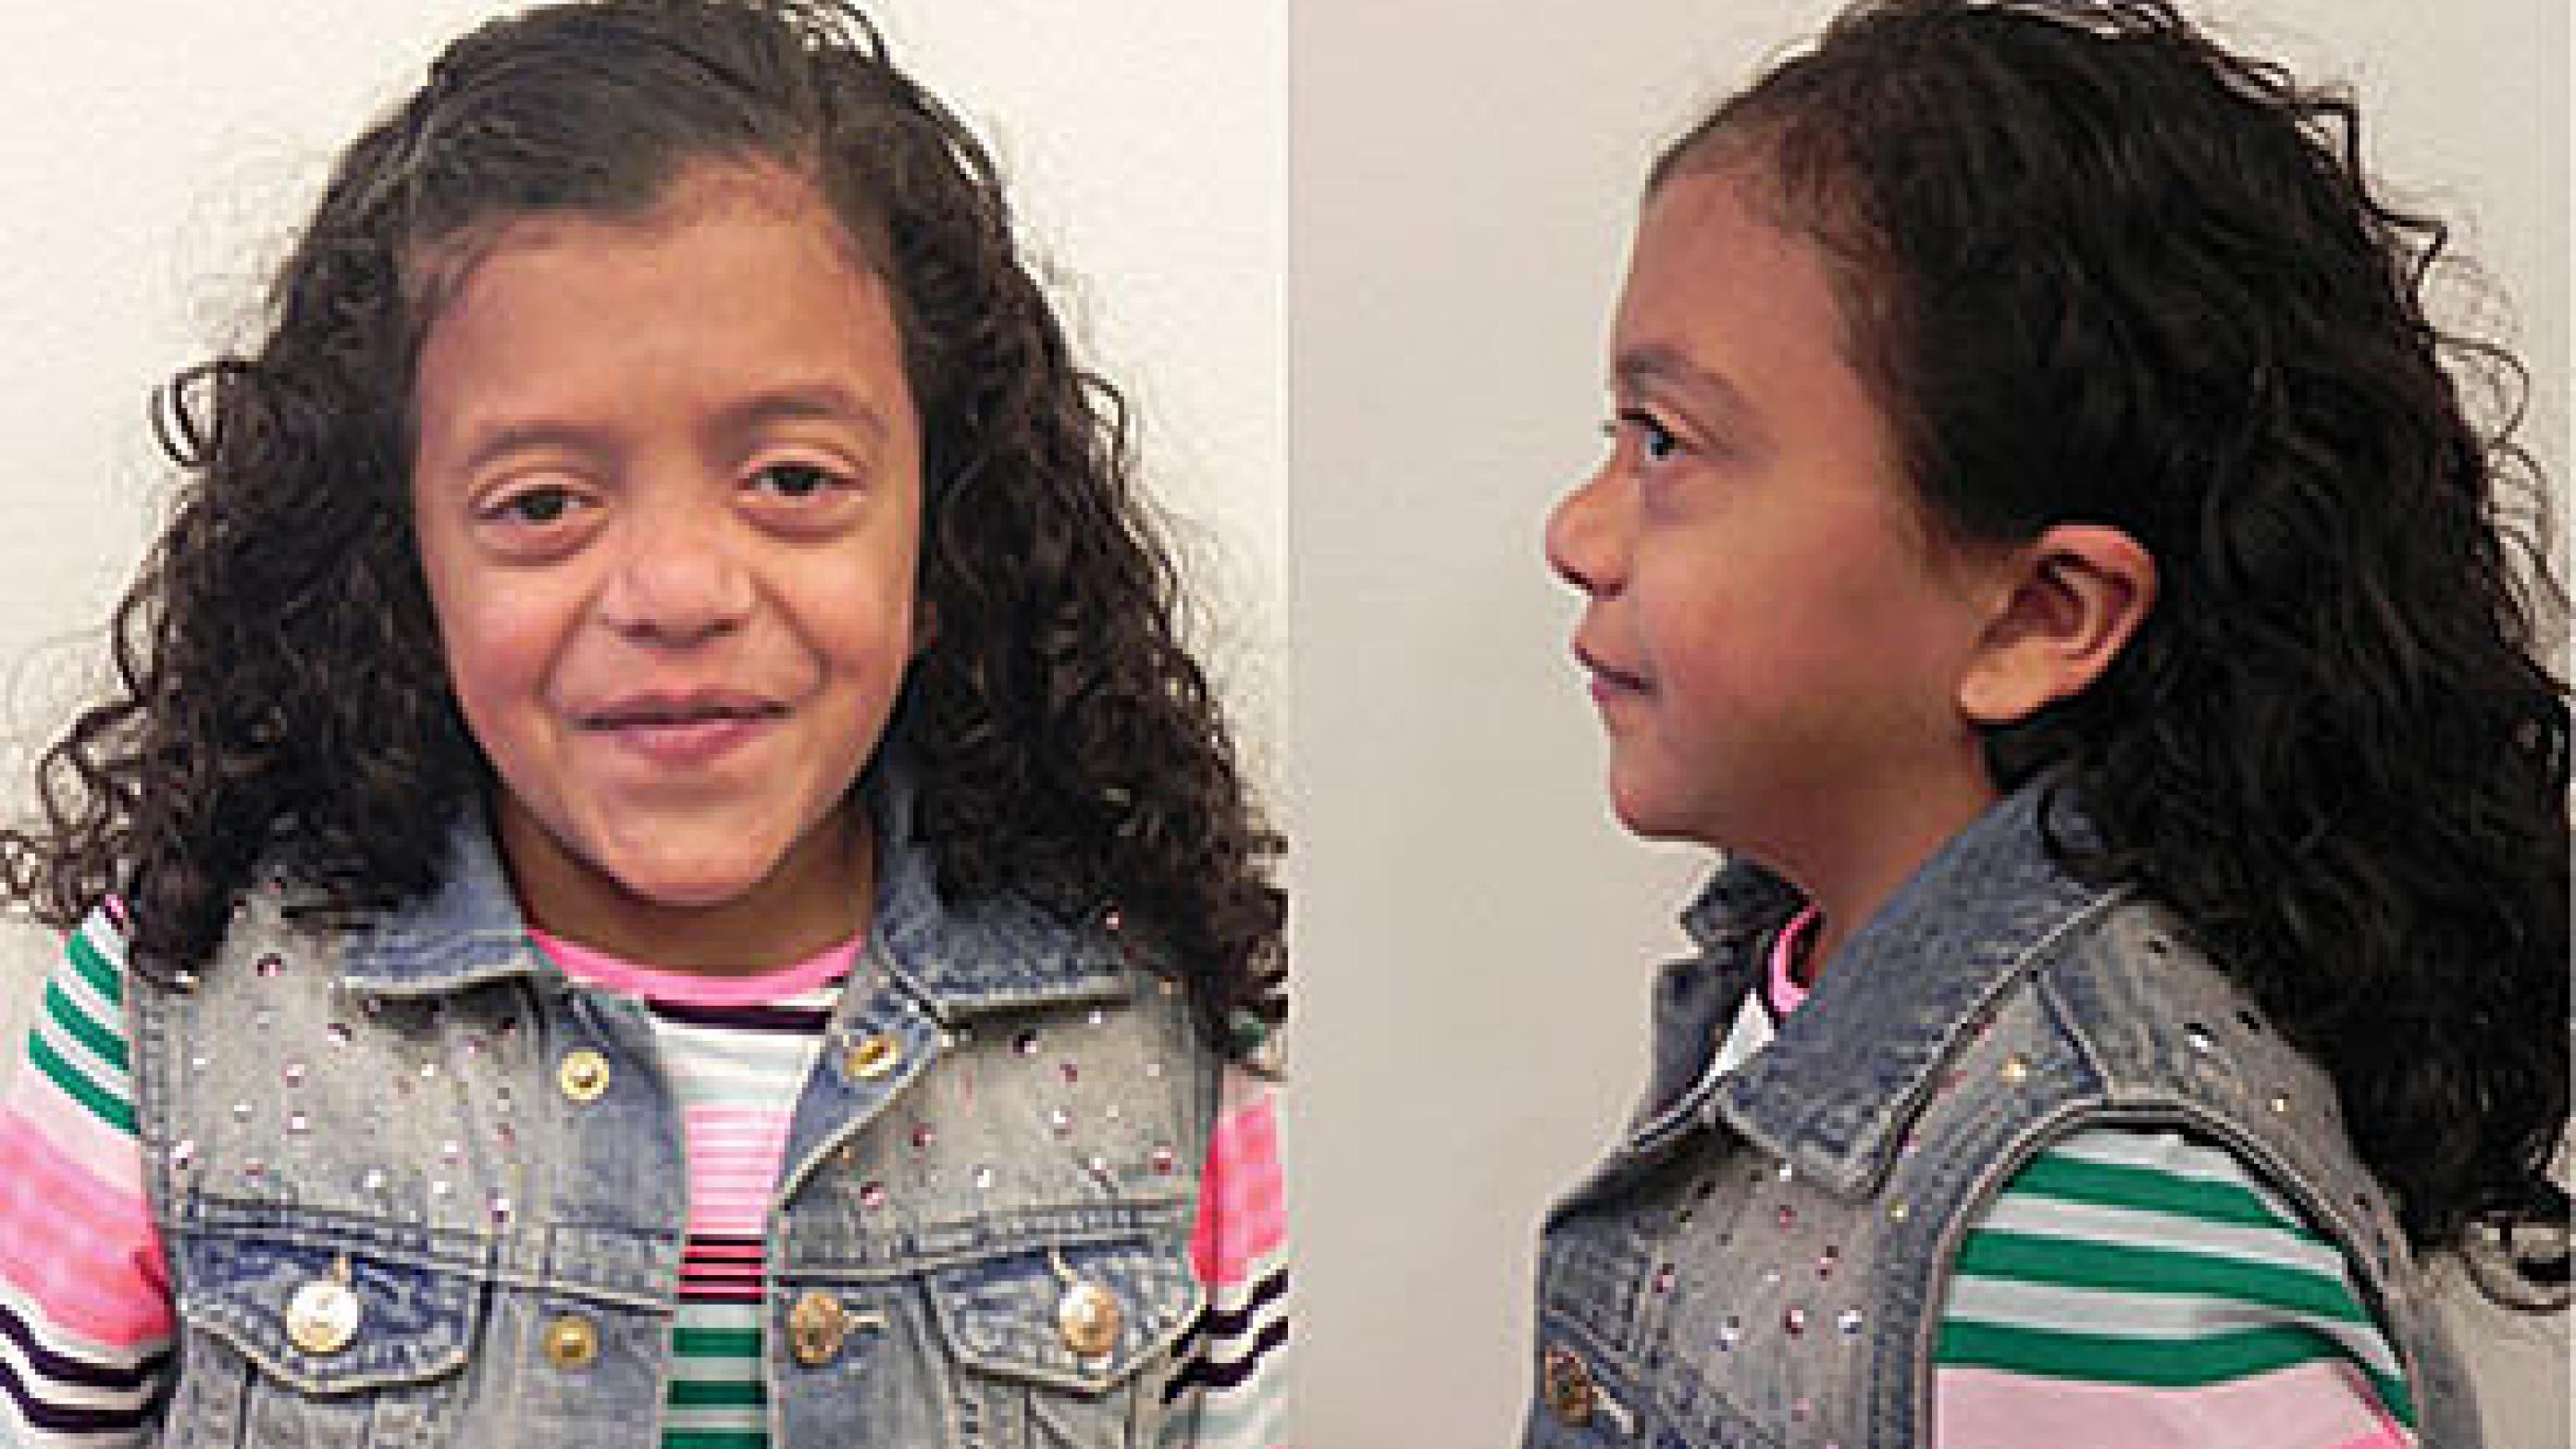 Niårig pige med Noonans syndrom og mutation i PTPN11: c.178G>A; p.(Gly60Ser) i heterozygot form.